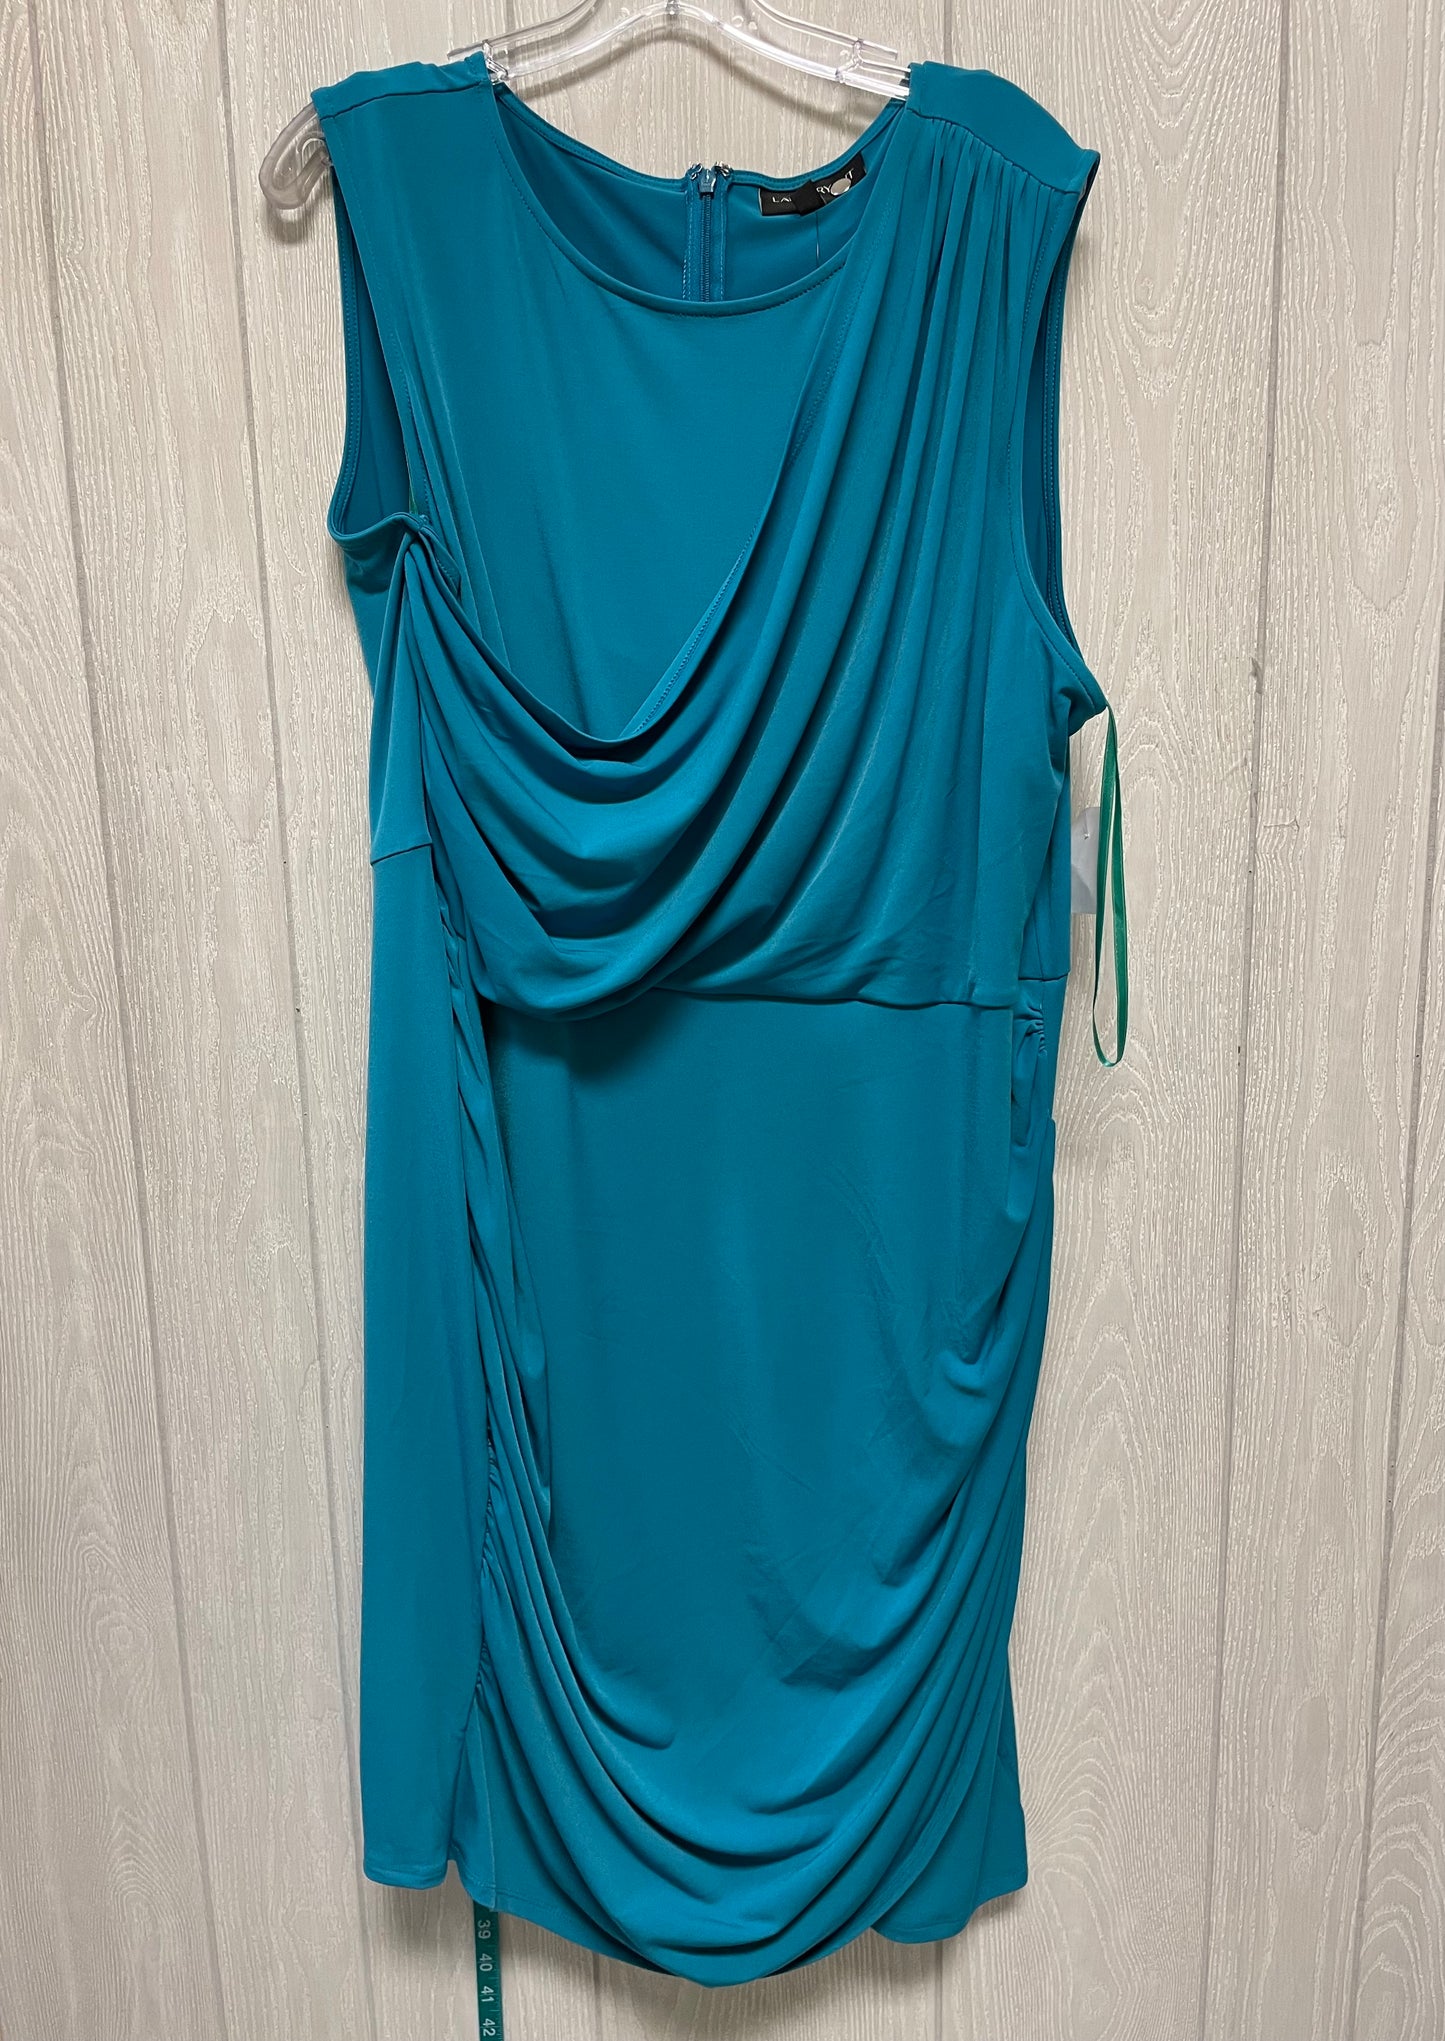 Dress Party Midi By Lane Bryant  Size: 3x